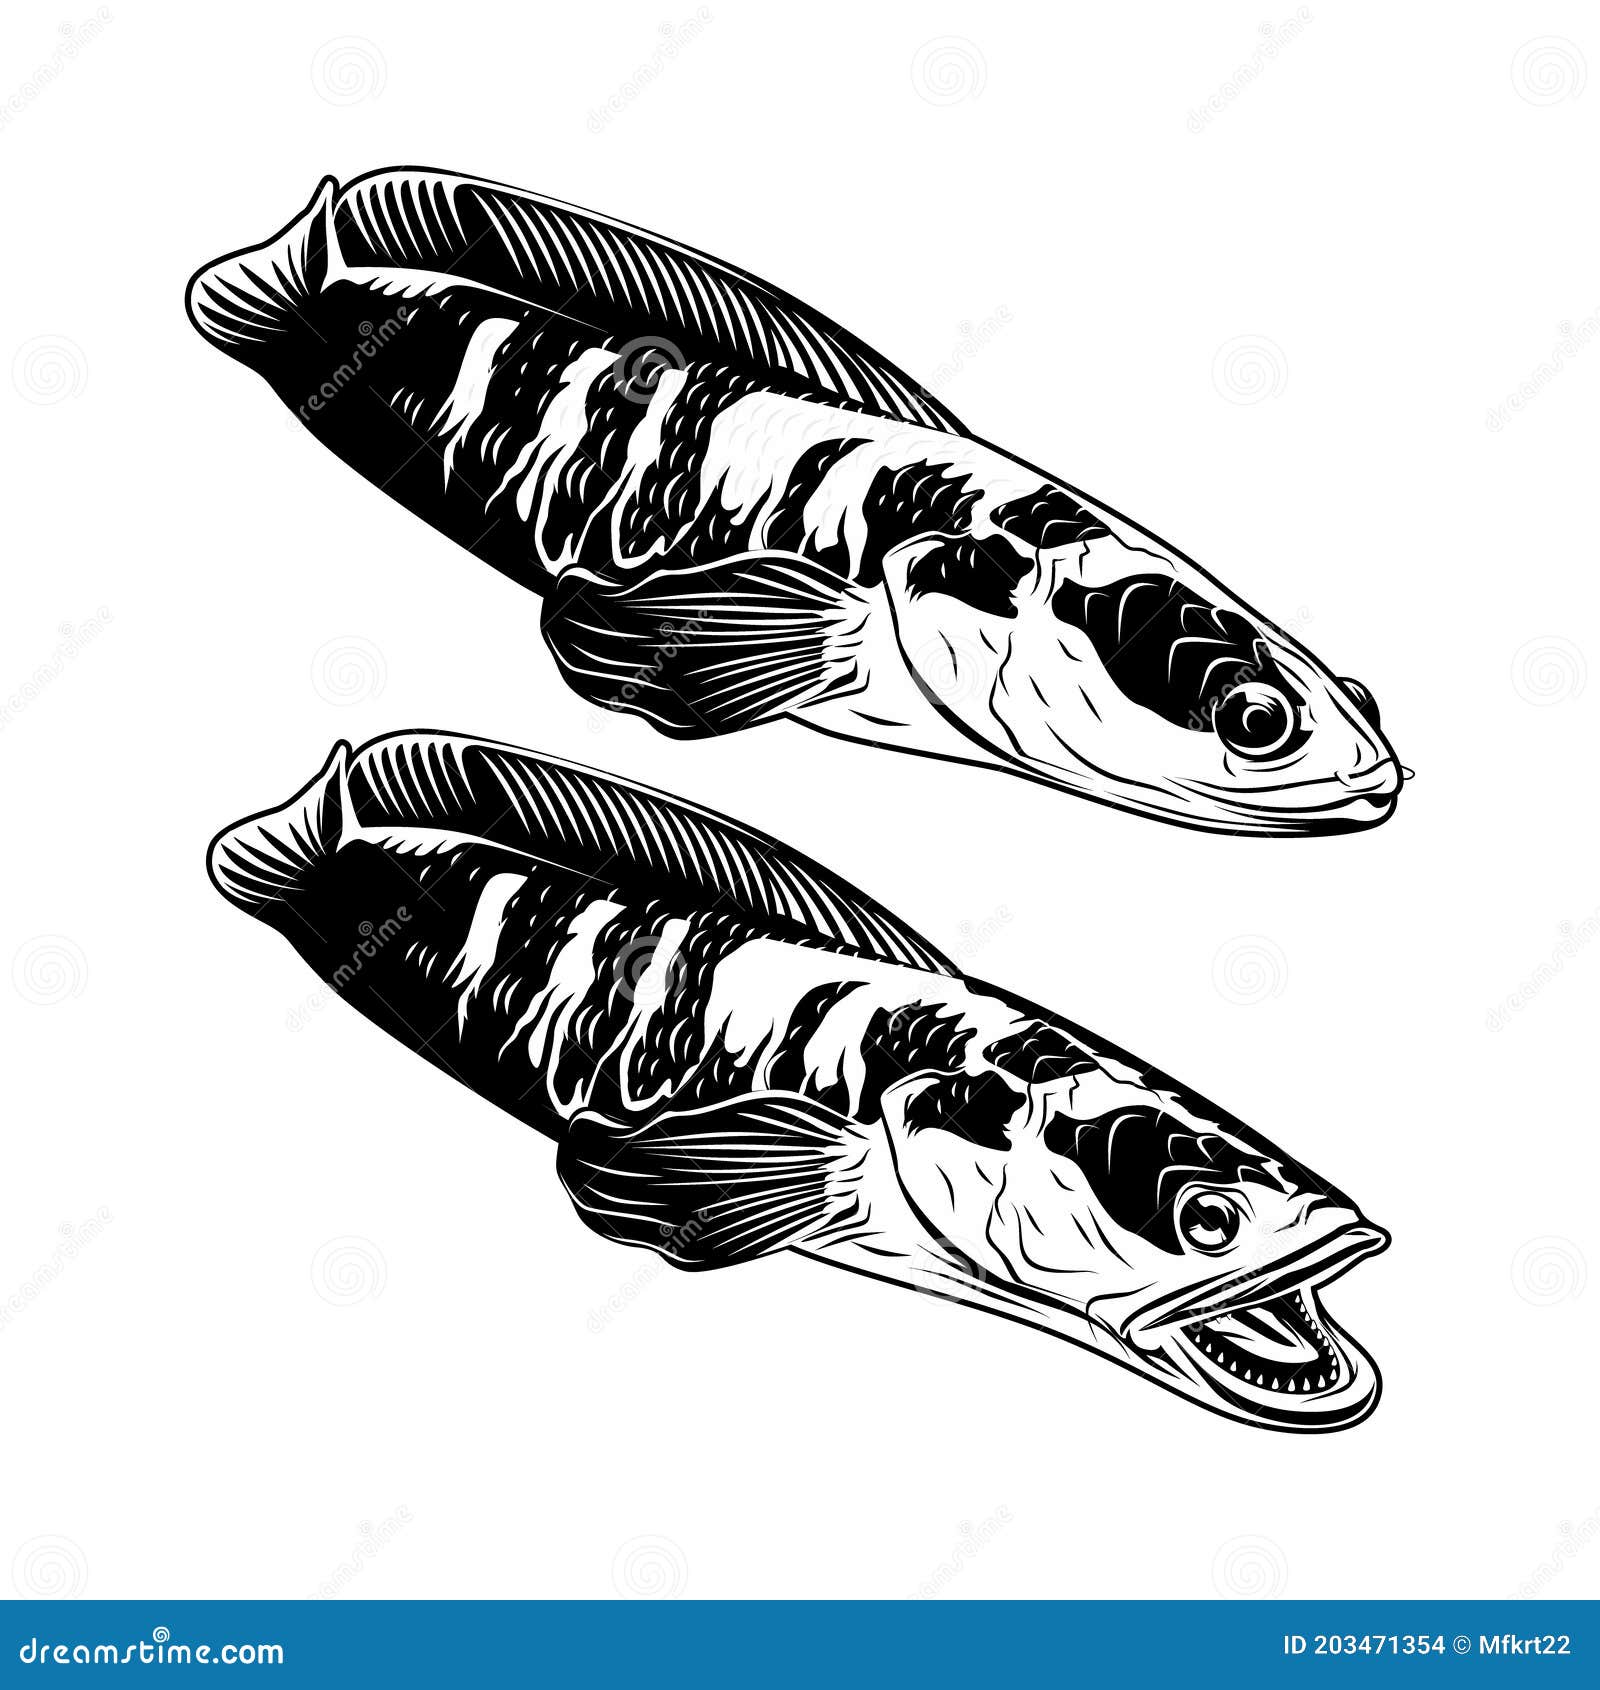 Ilustração de vetor de peixe cabeça de cobra azul bonito dos